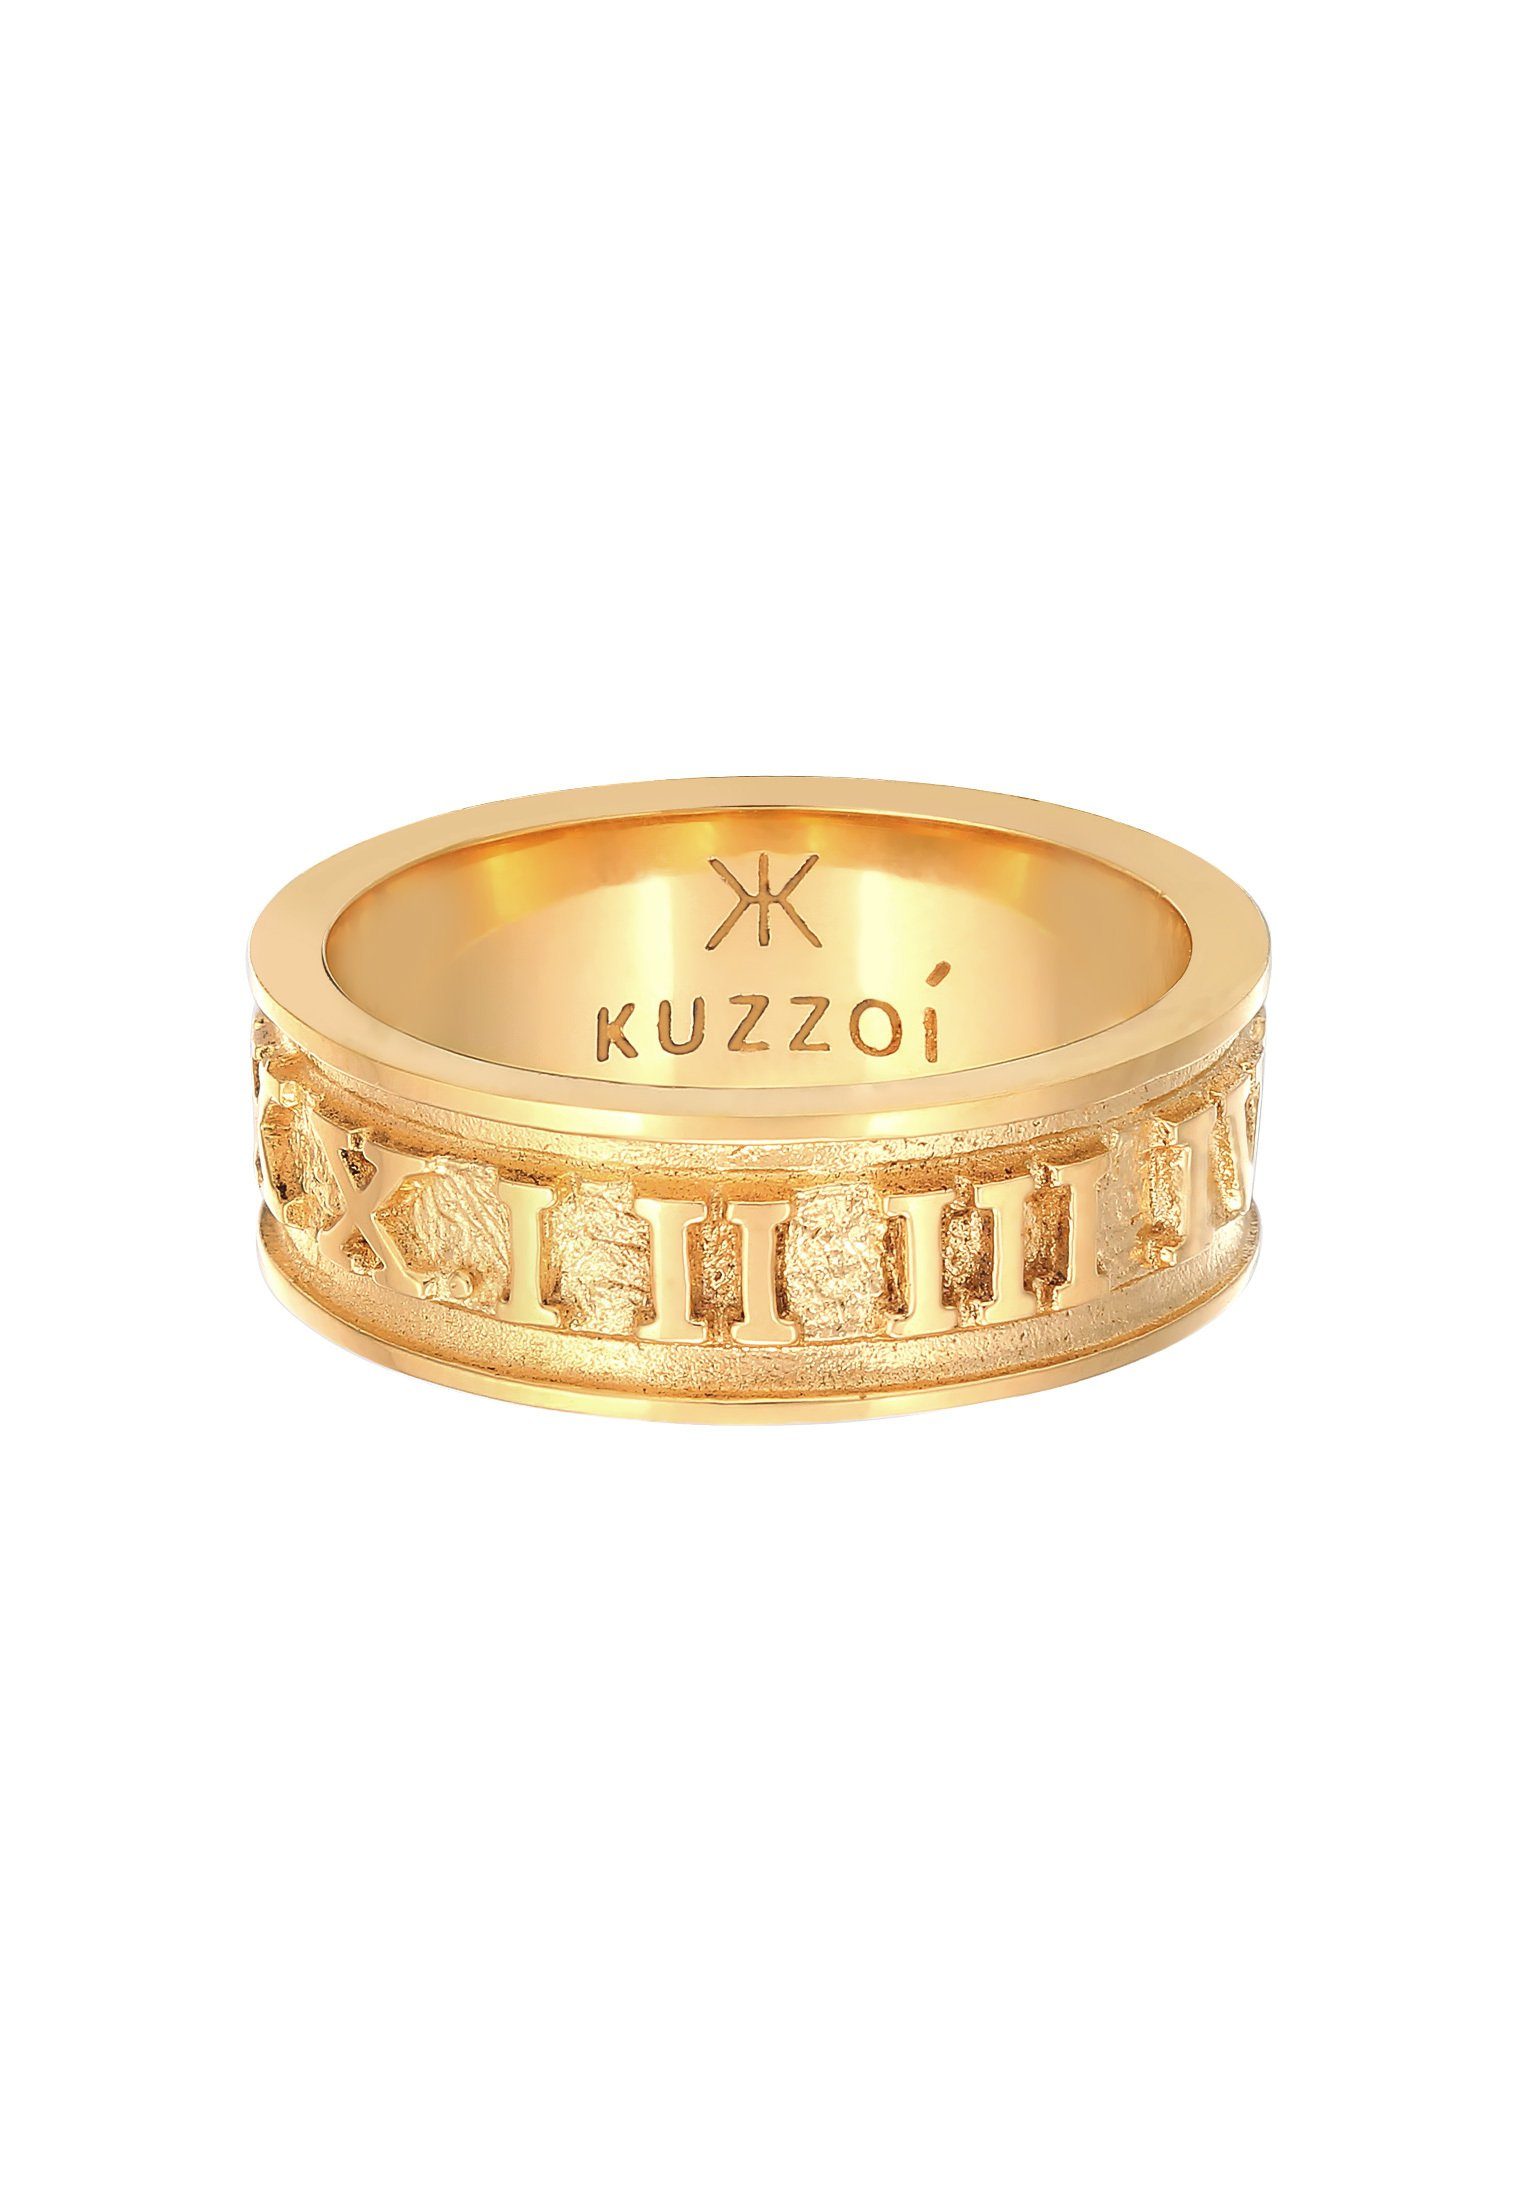 Kuzzoi Silberring Herren 925 Zahlen Römische Silber Bandring Gold